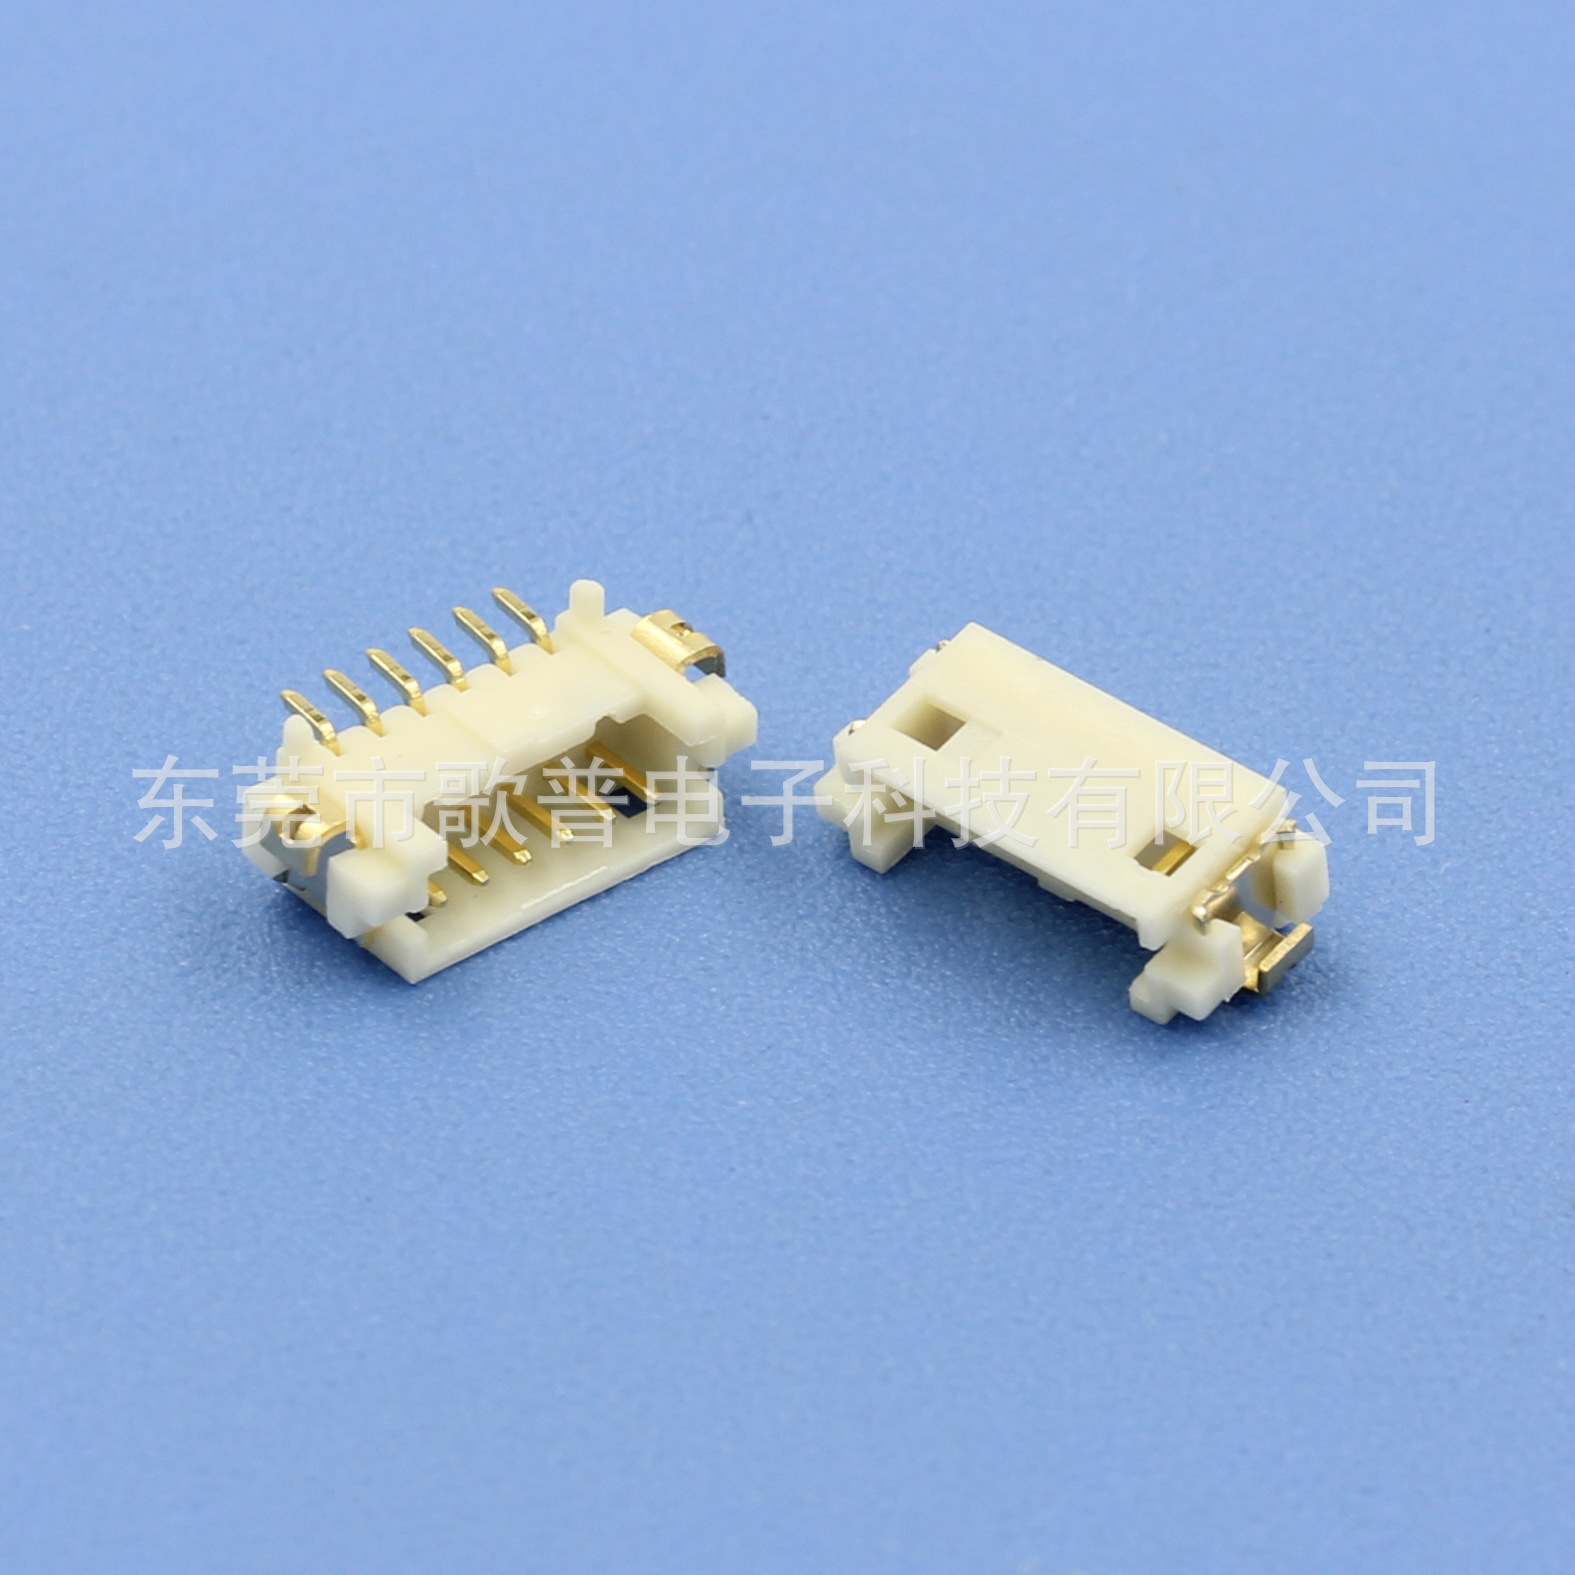 台湾歌普1.25间距单排针座胶壳端子 1.25mm SMT立贴 台资工厂直销